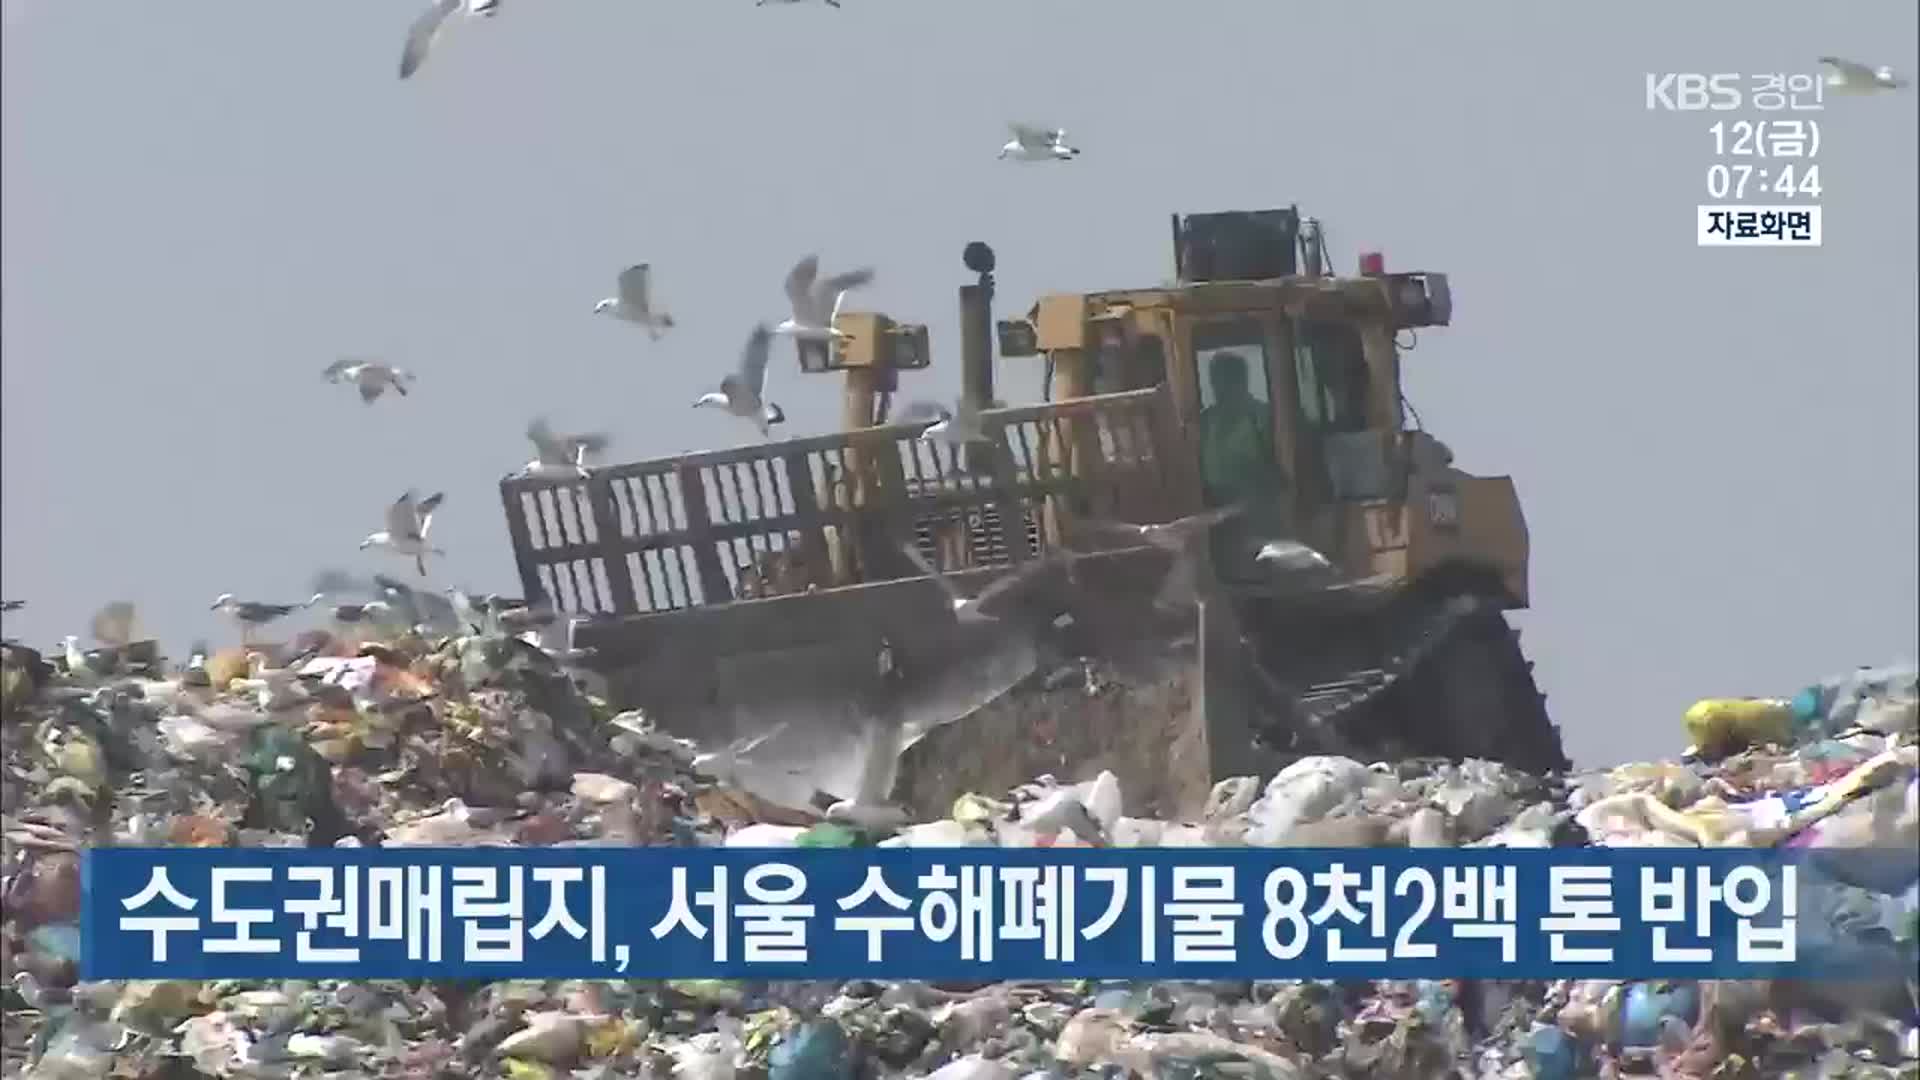 수도권매립지, 서울 수해폐기물 8천2백 톤 반입